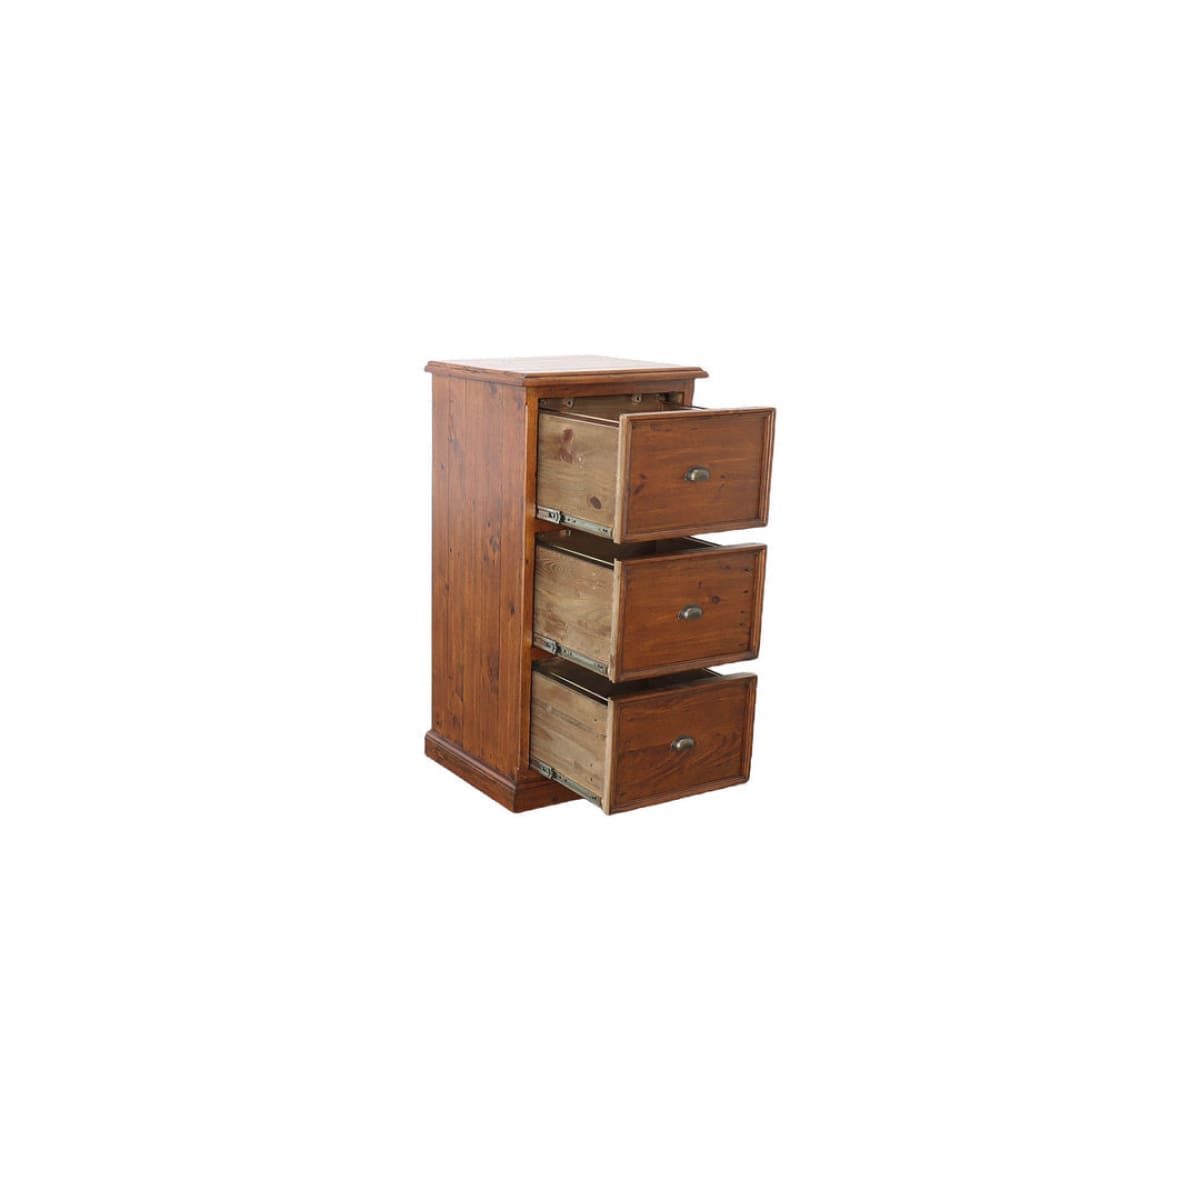 Lifestyle File Cabinet - African Dusk - lh-import-desks